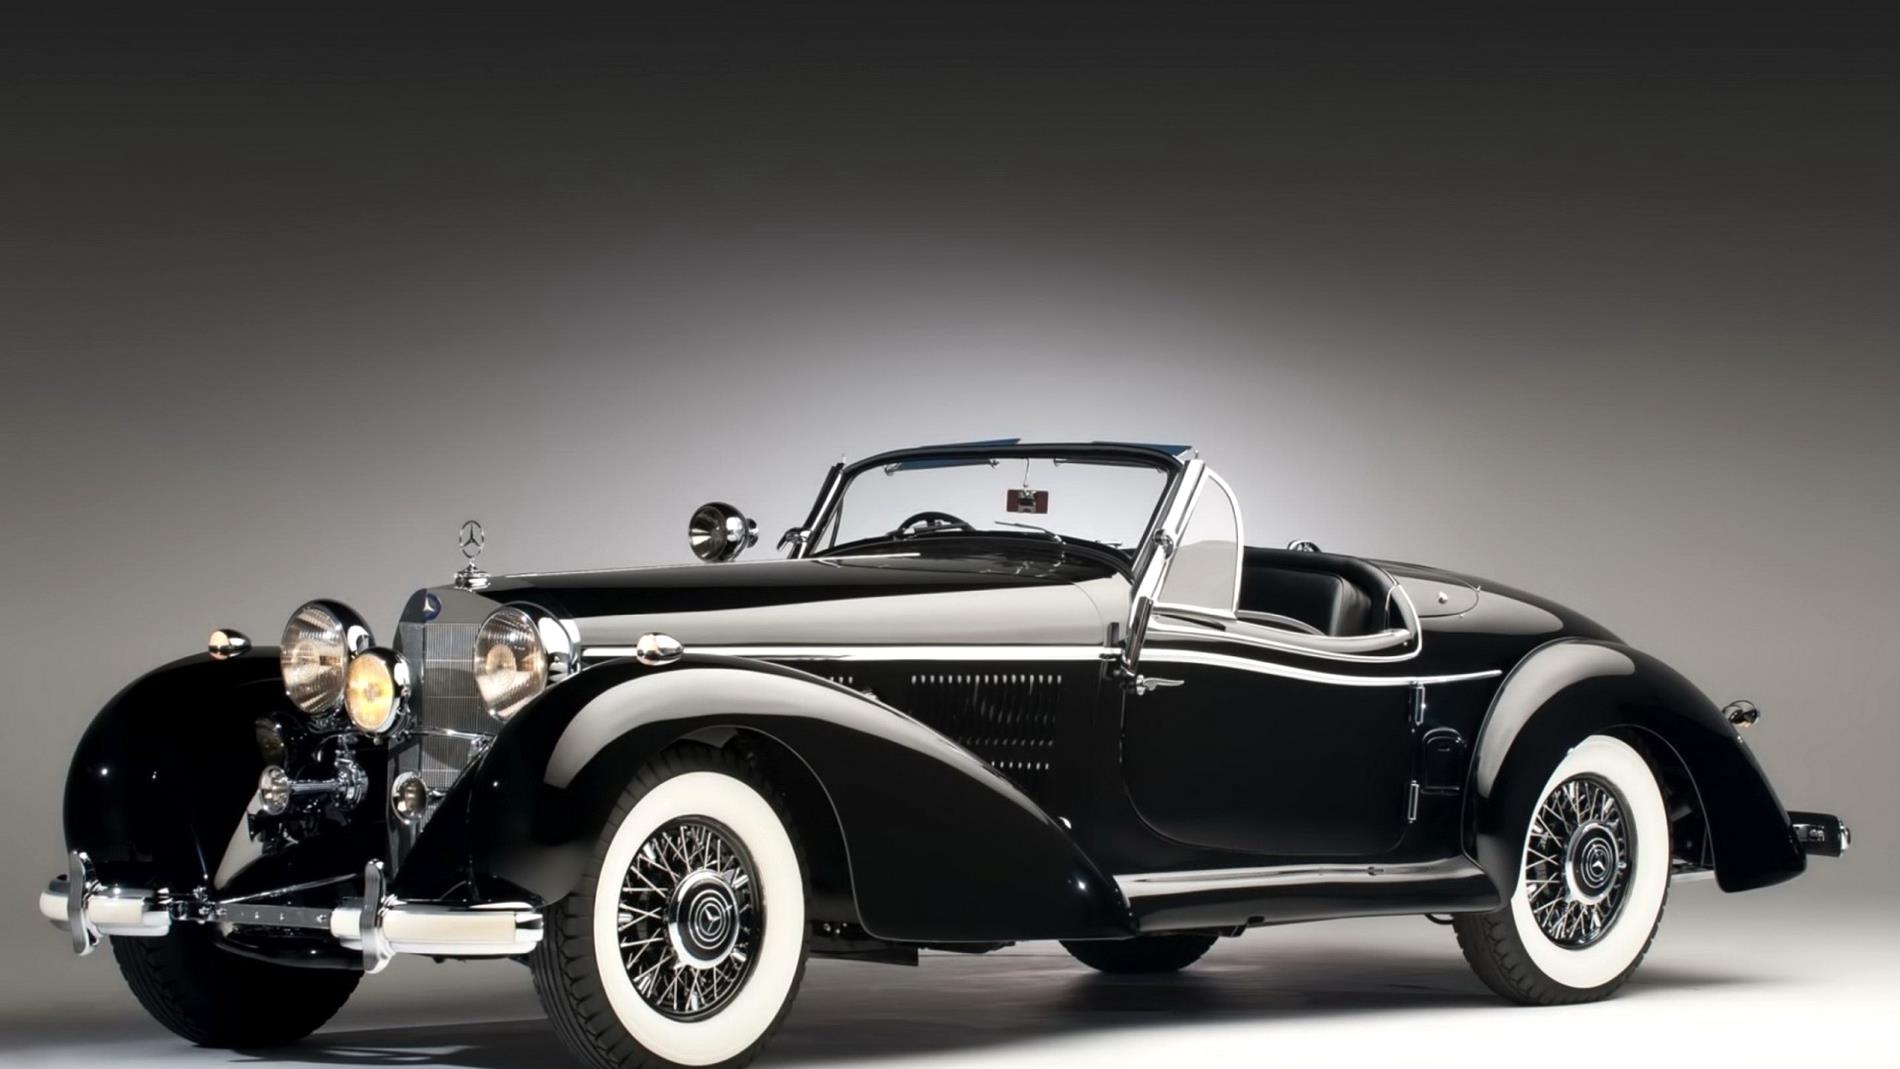 The-Best-Vintage-Car-Wallpapers-20-Best Vintage Car-wv-aston martin ...